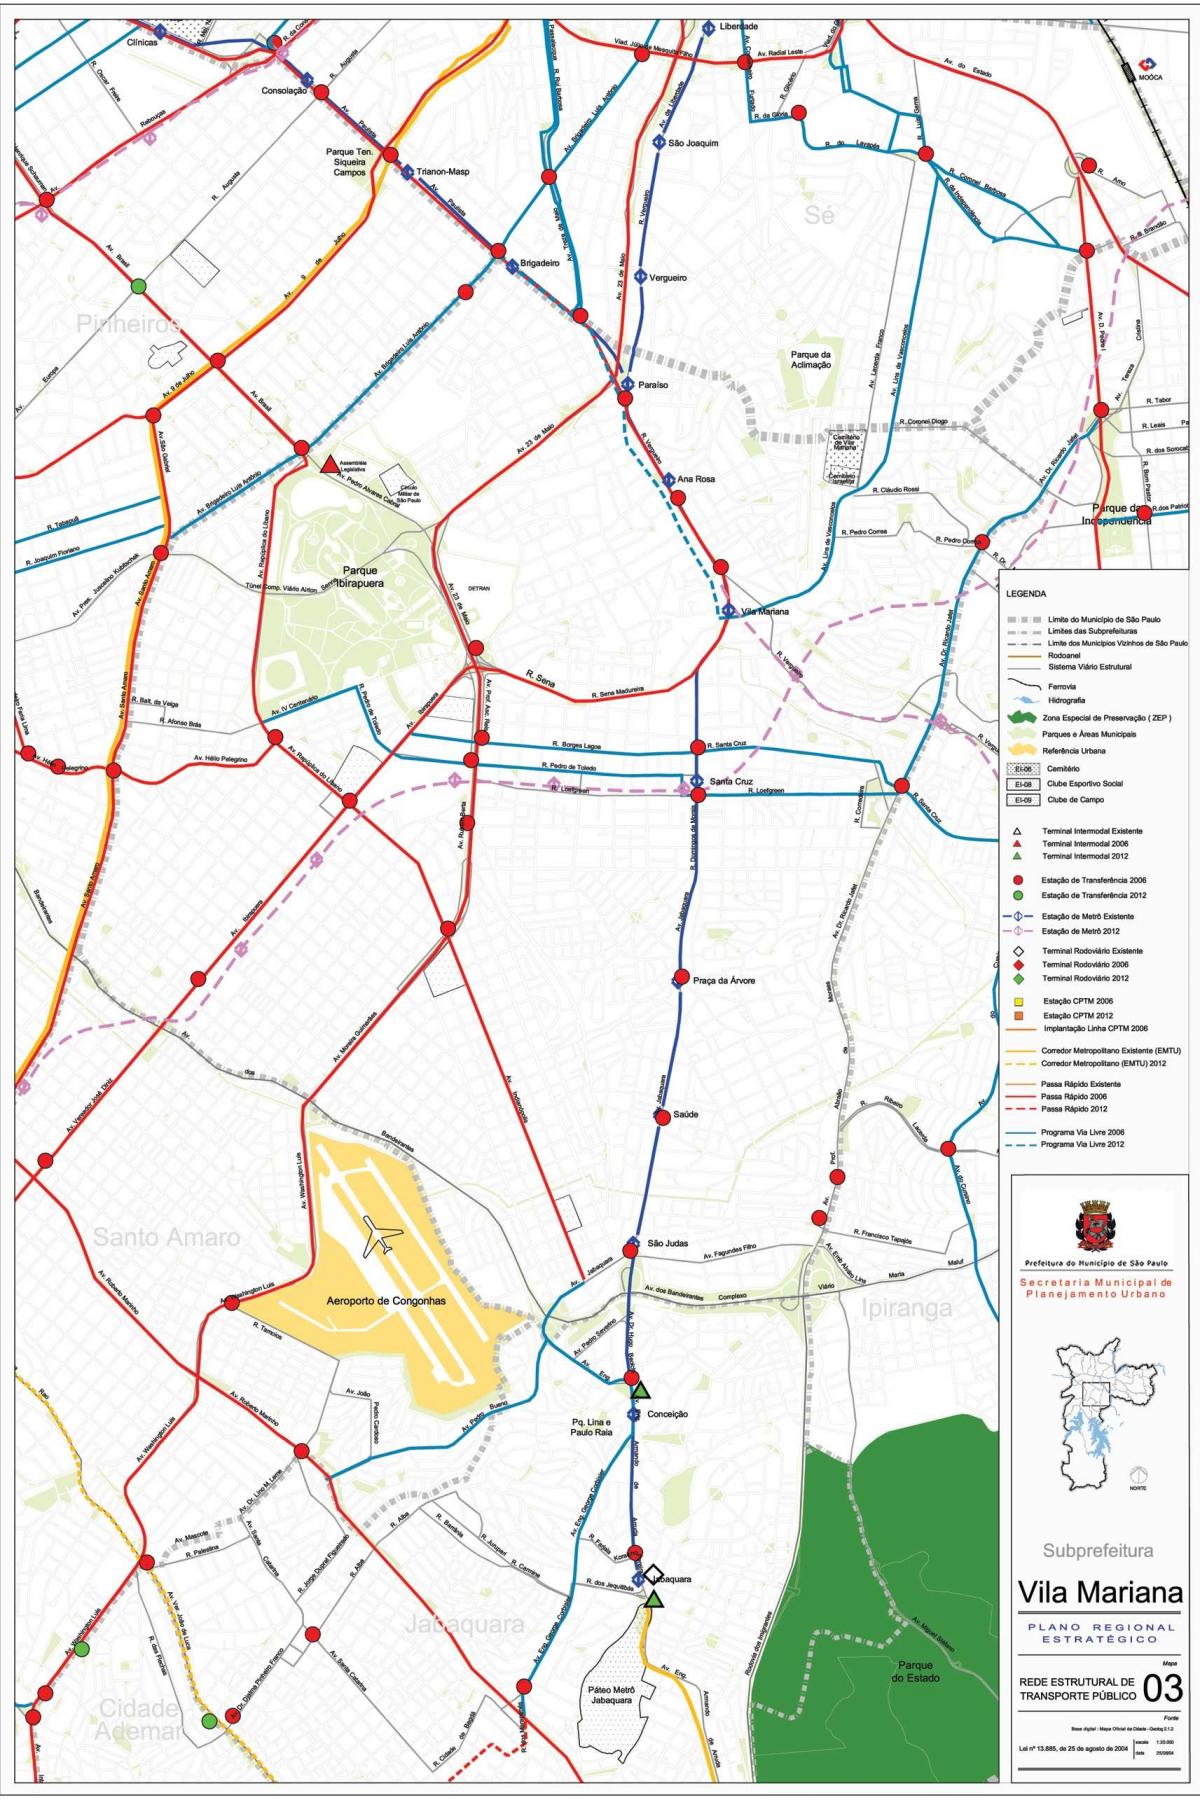 Mapa de Vila Mariana São Paulo - transport Públic